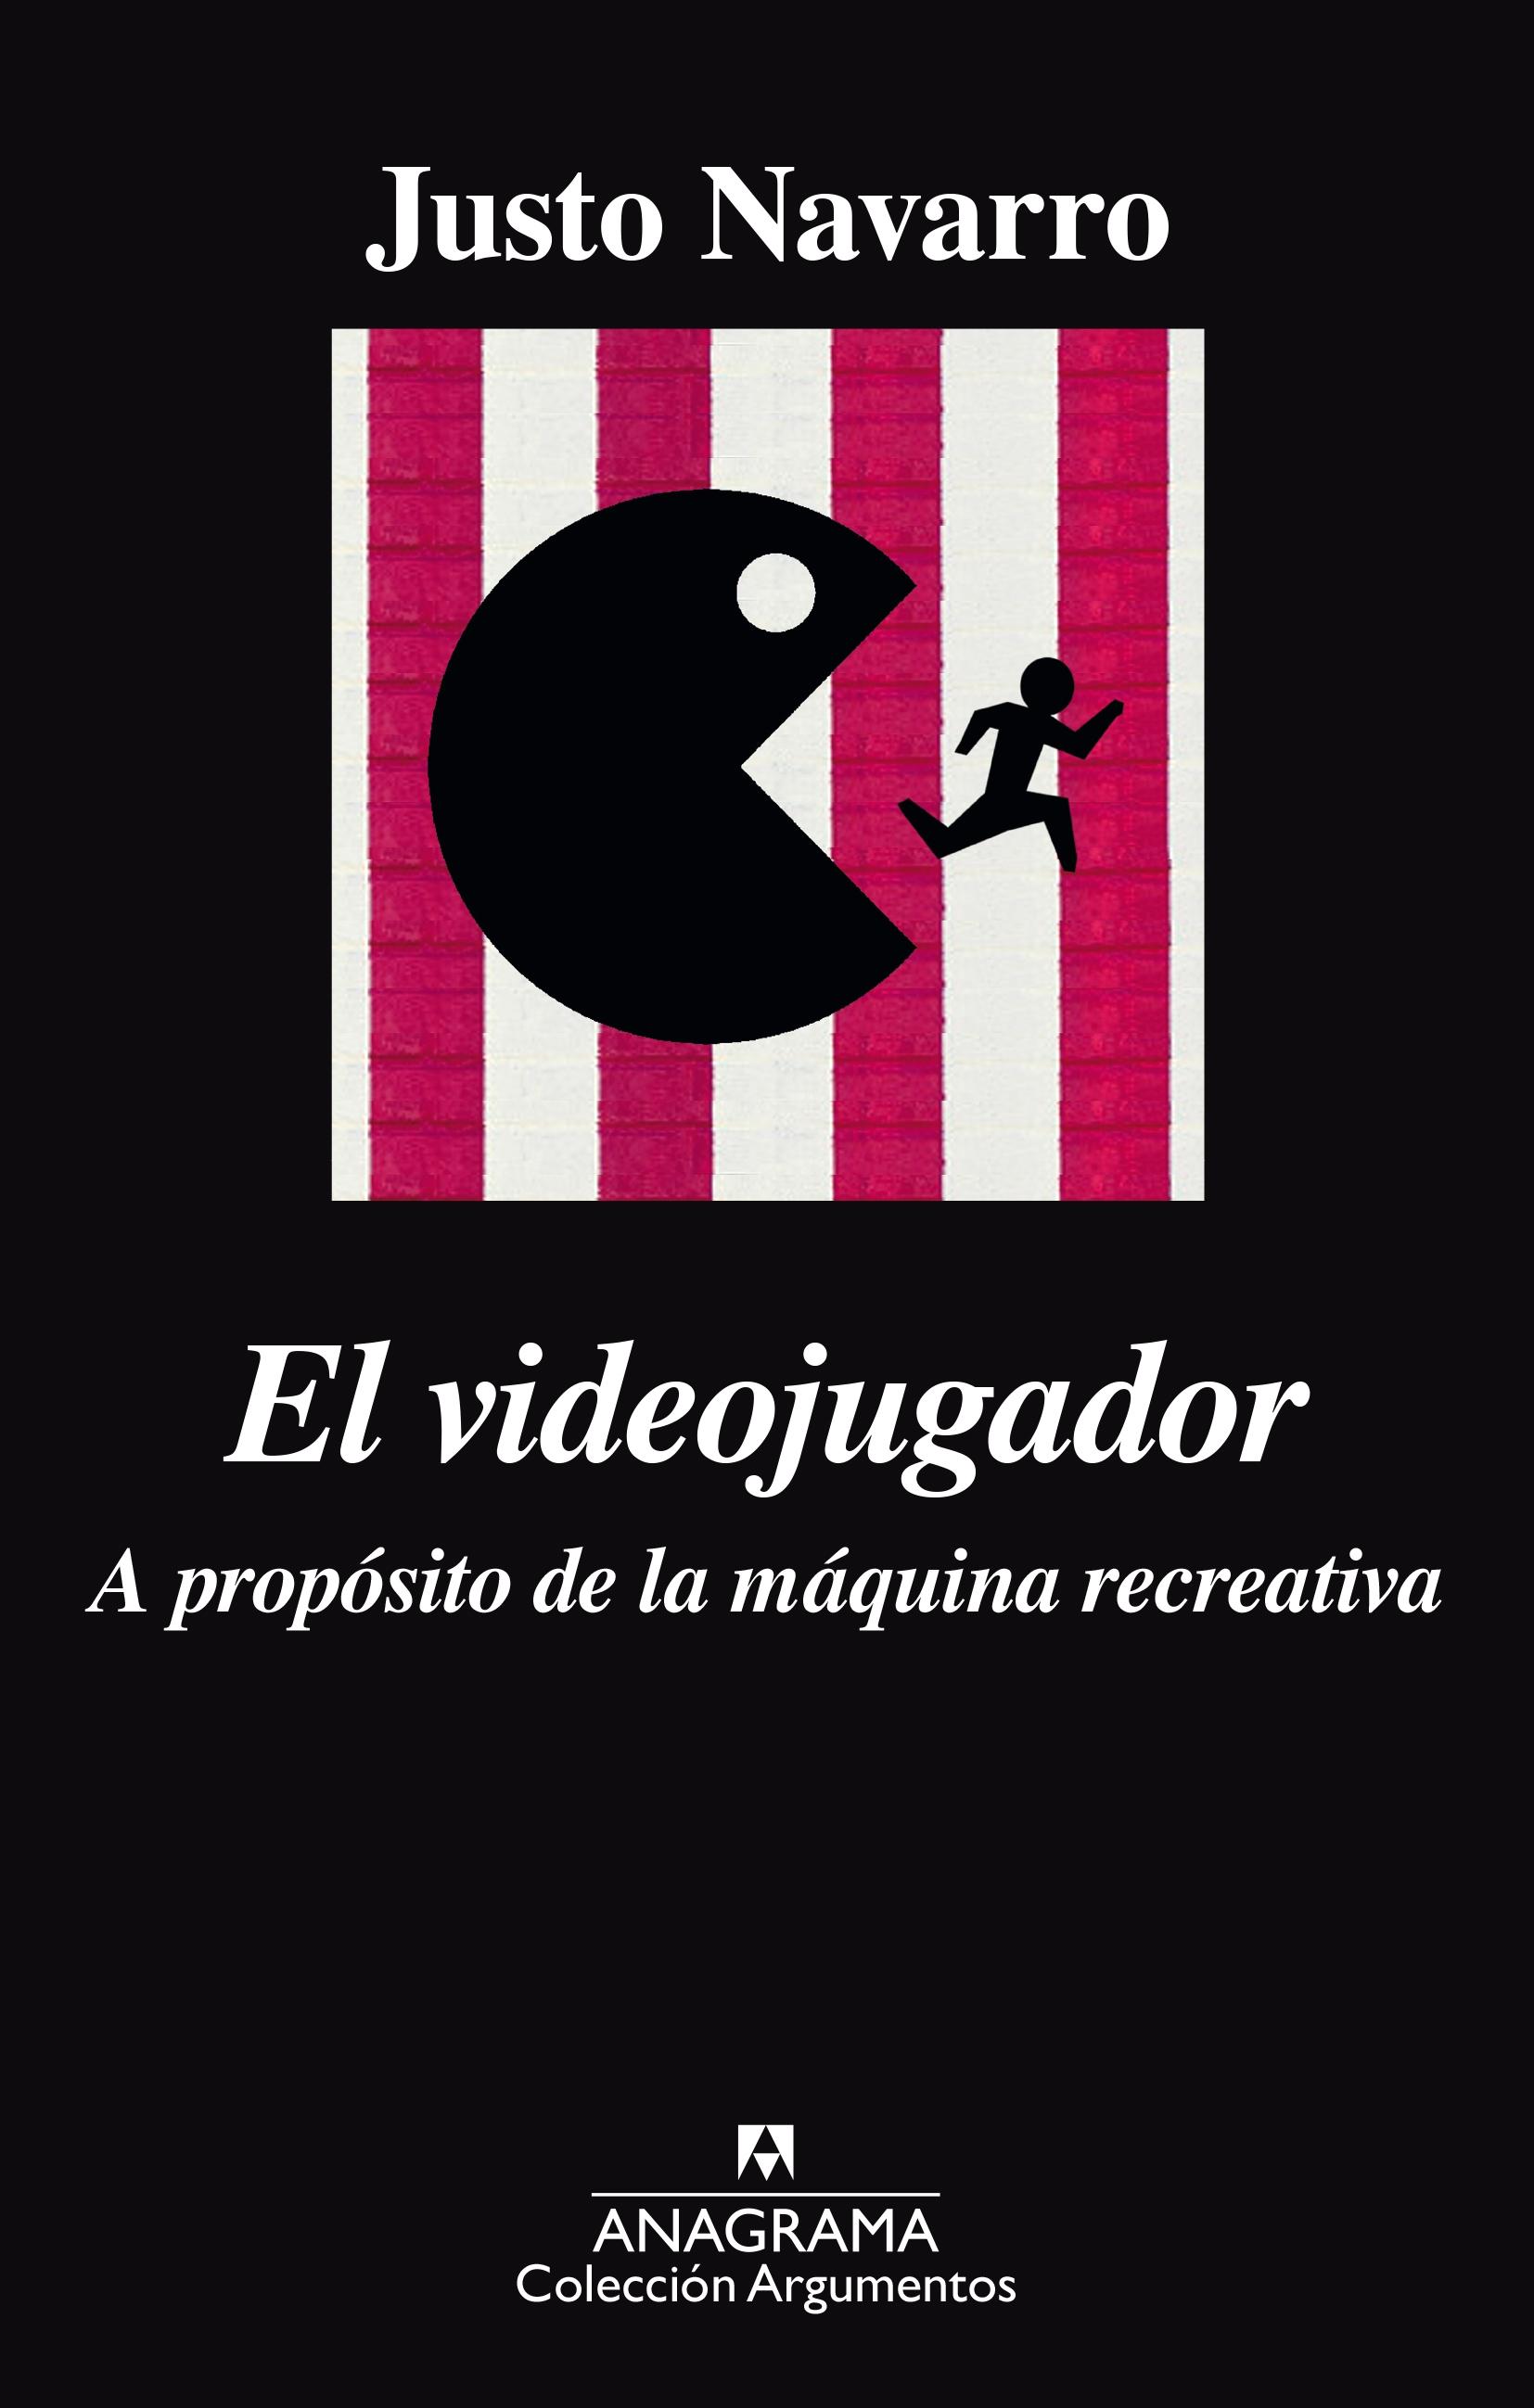 EL VIDEOJUGADOR "A PROPÓSITO DE LA MÁQUINA RECREATIVA"